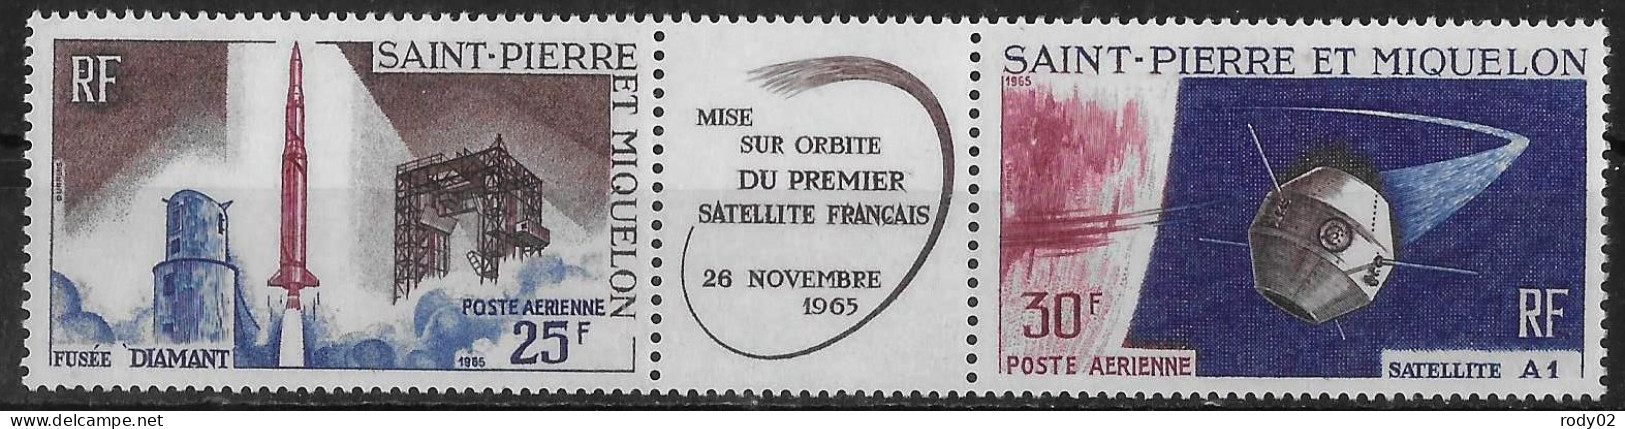 SAINT PIERRE ET MIQUELON - LANCEMENT DU PREMIER SATELLITE FRANCAIS - PA 34A - NEUF** MNH - Unused Stamps